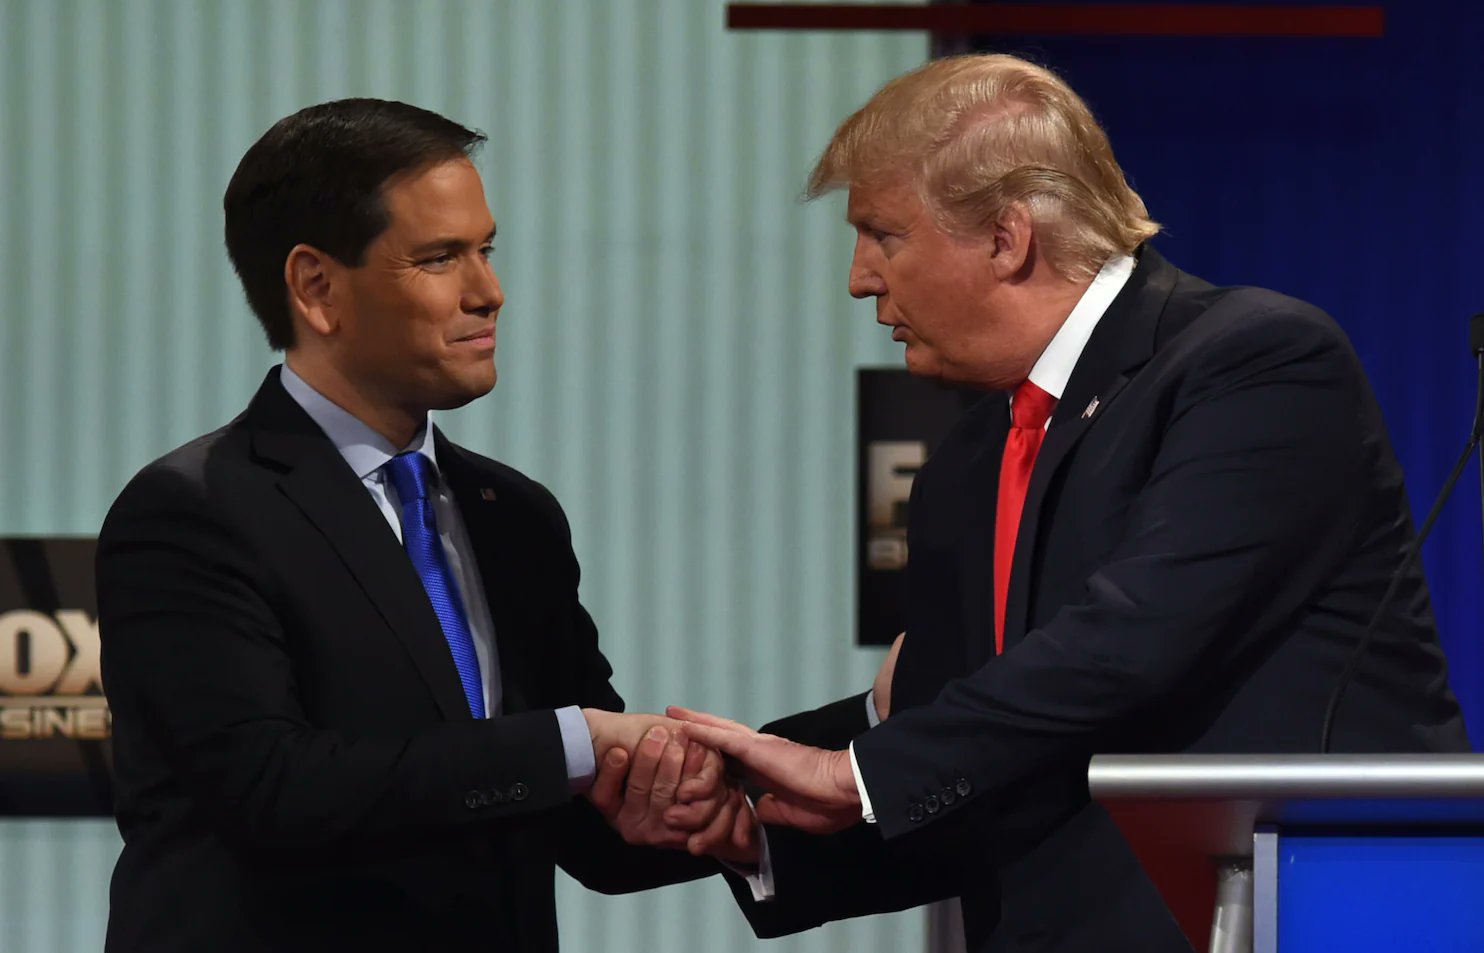 Donald Trump anuncia mitin político en Florida para respaldar candidatura de Marco Rubio al Senado